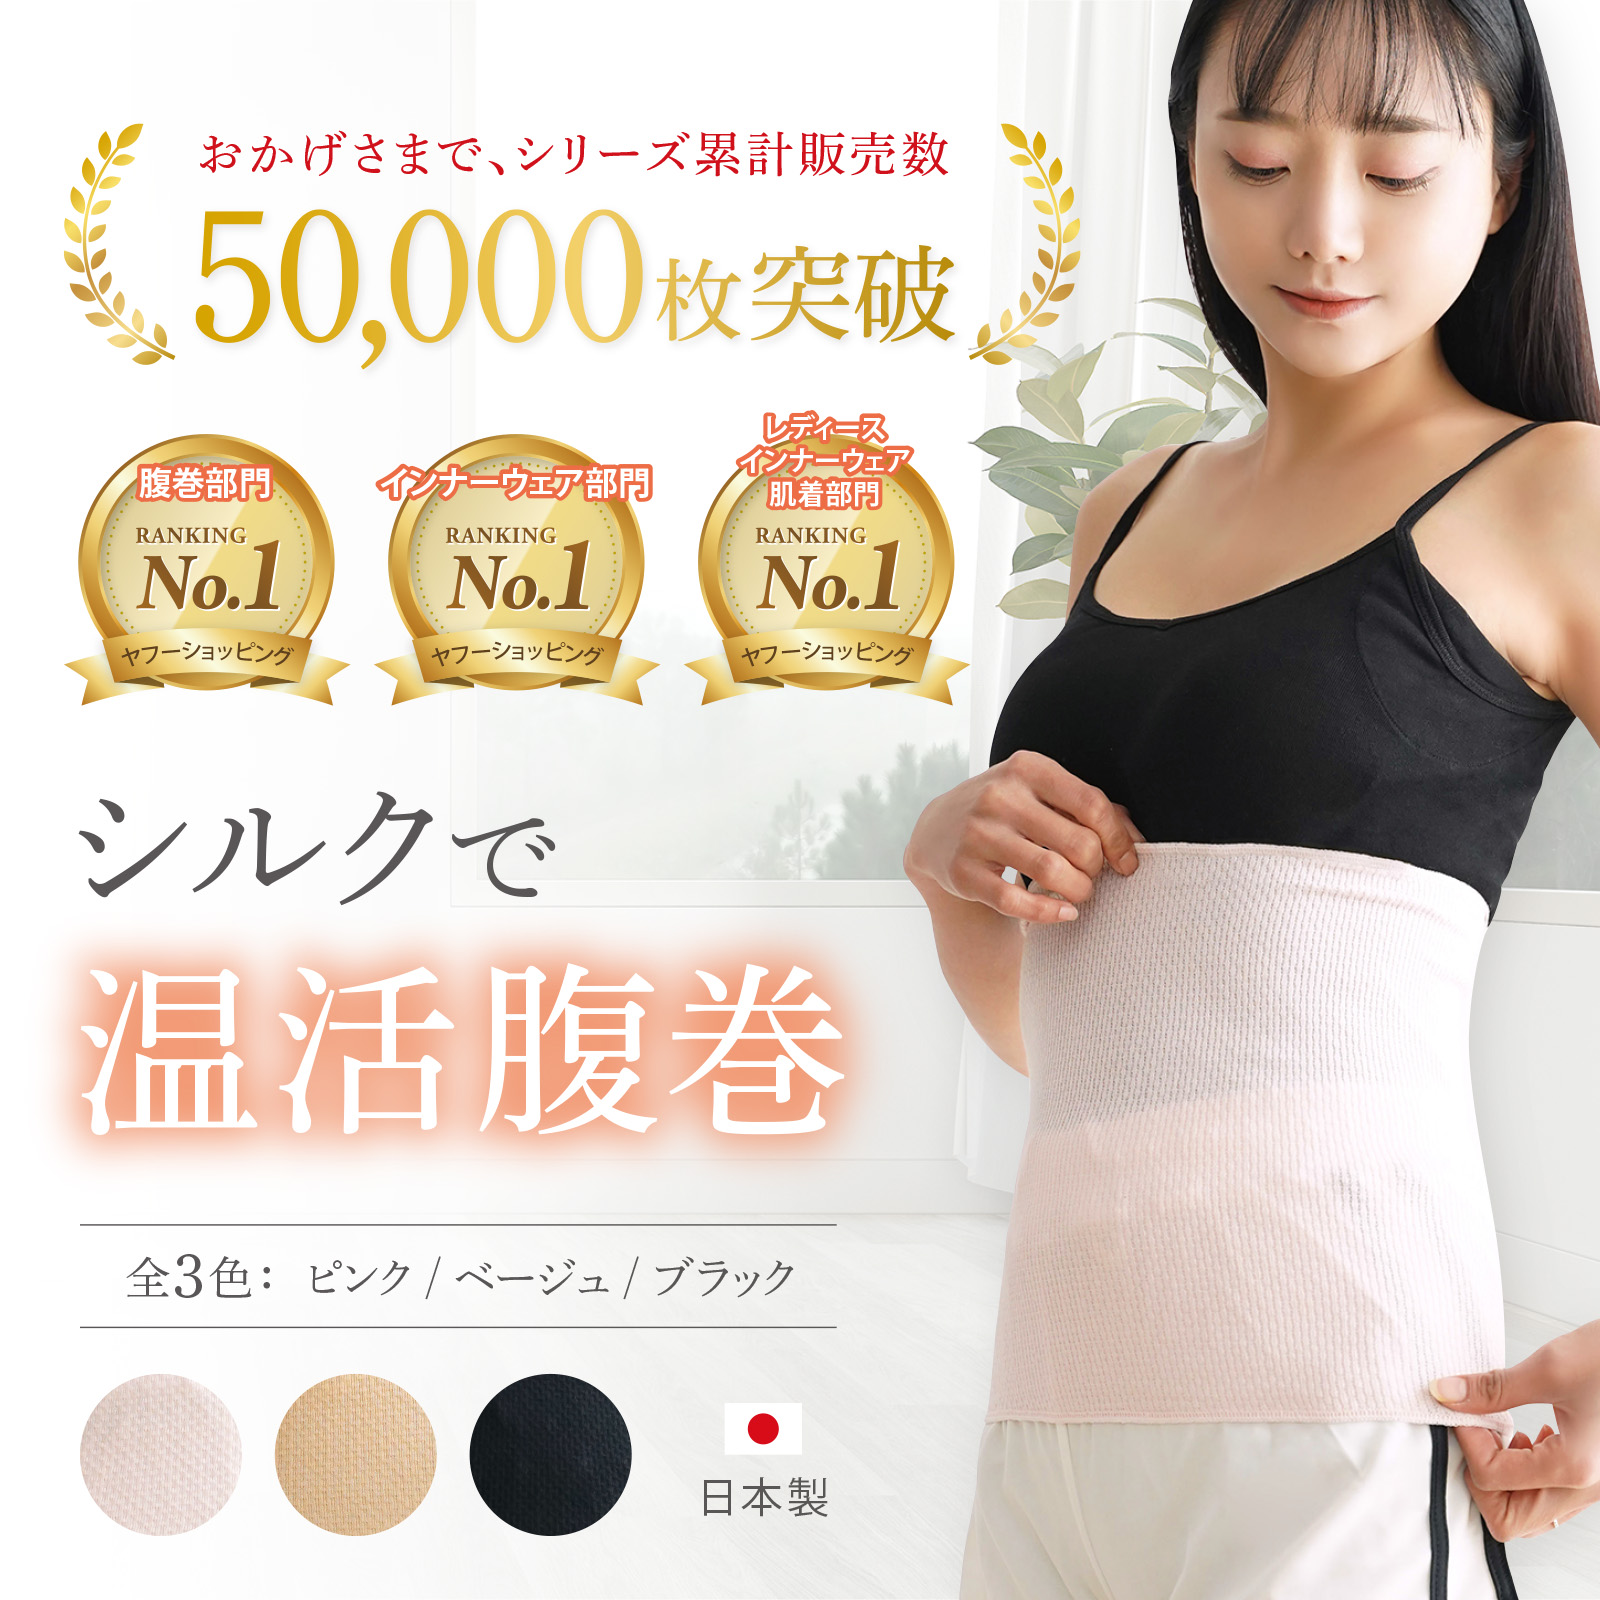 . шт шелк сделано в Японии женский мужской . наматывать. ... хлопок хлопок беременность средний .. тонкий теплый 